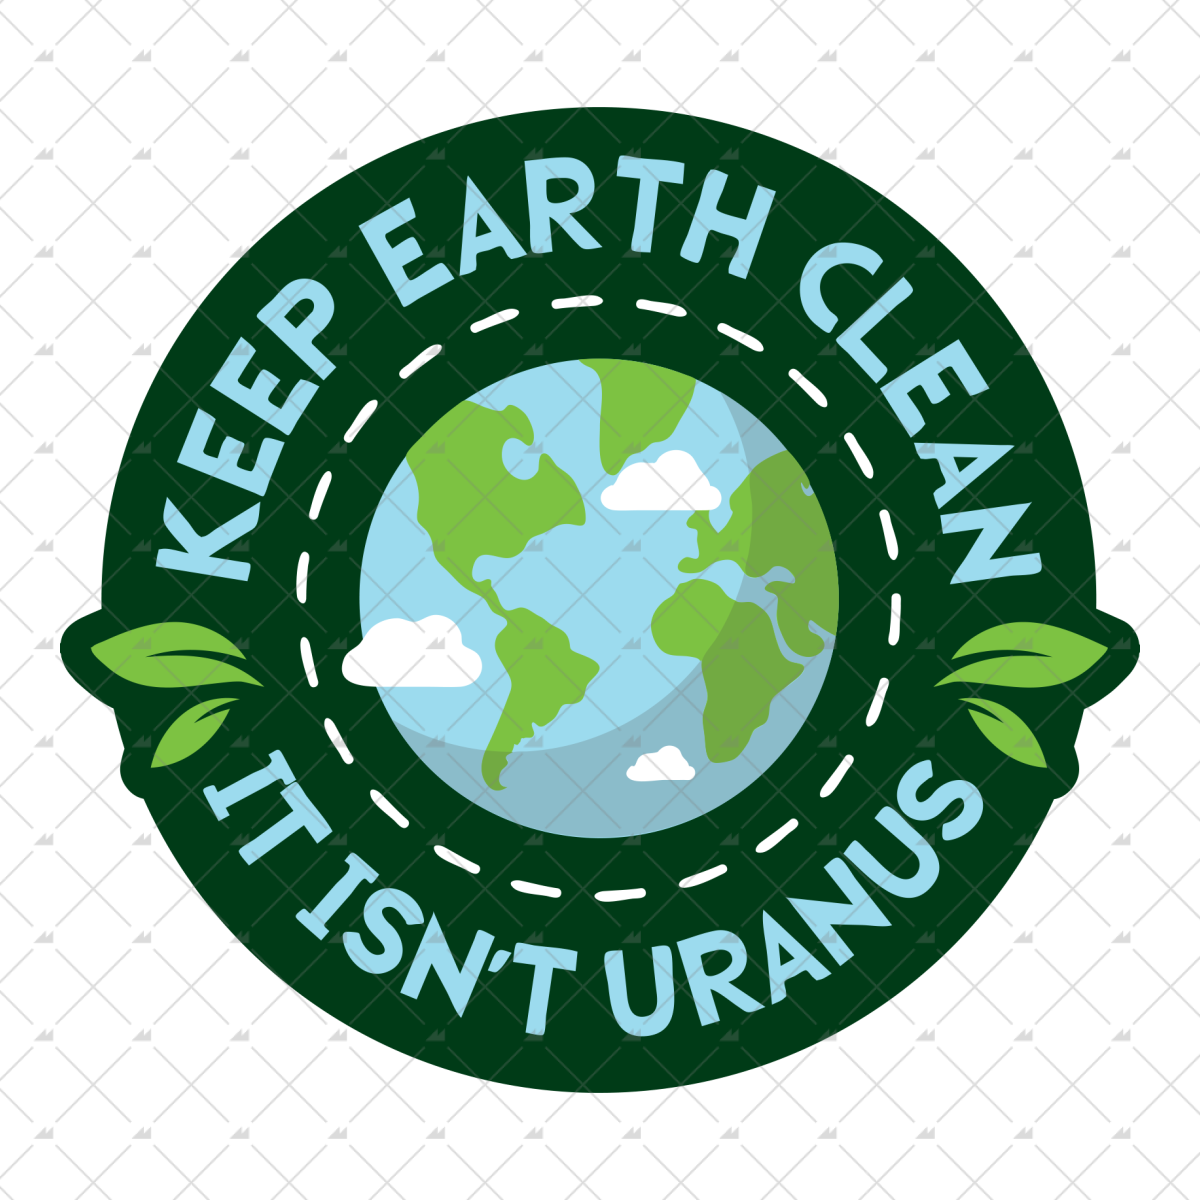 Keep Earth Clean - Sticker